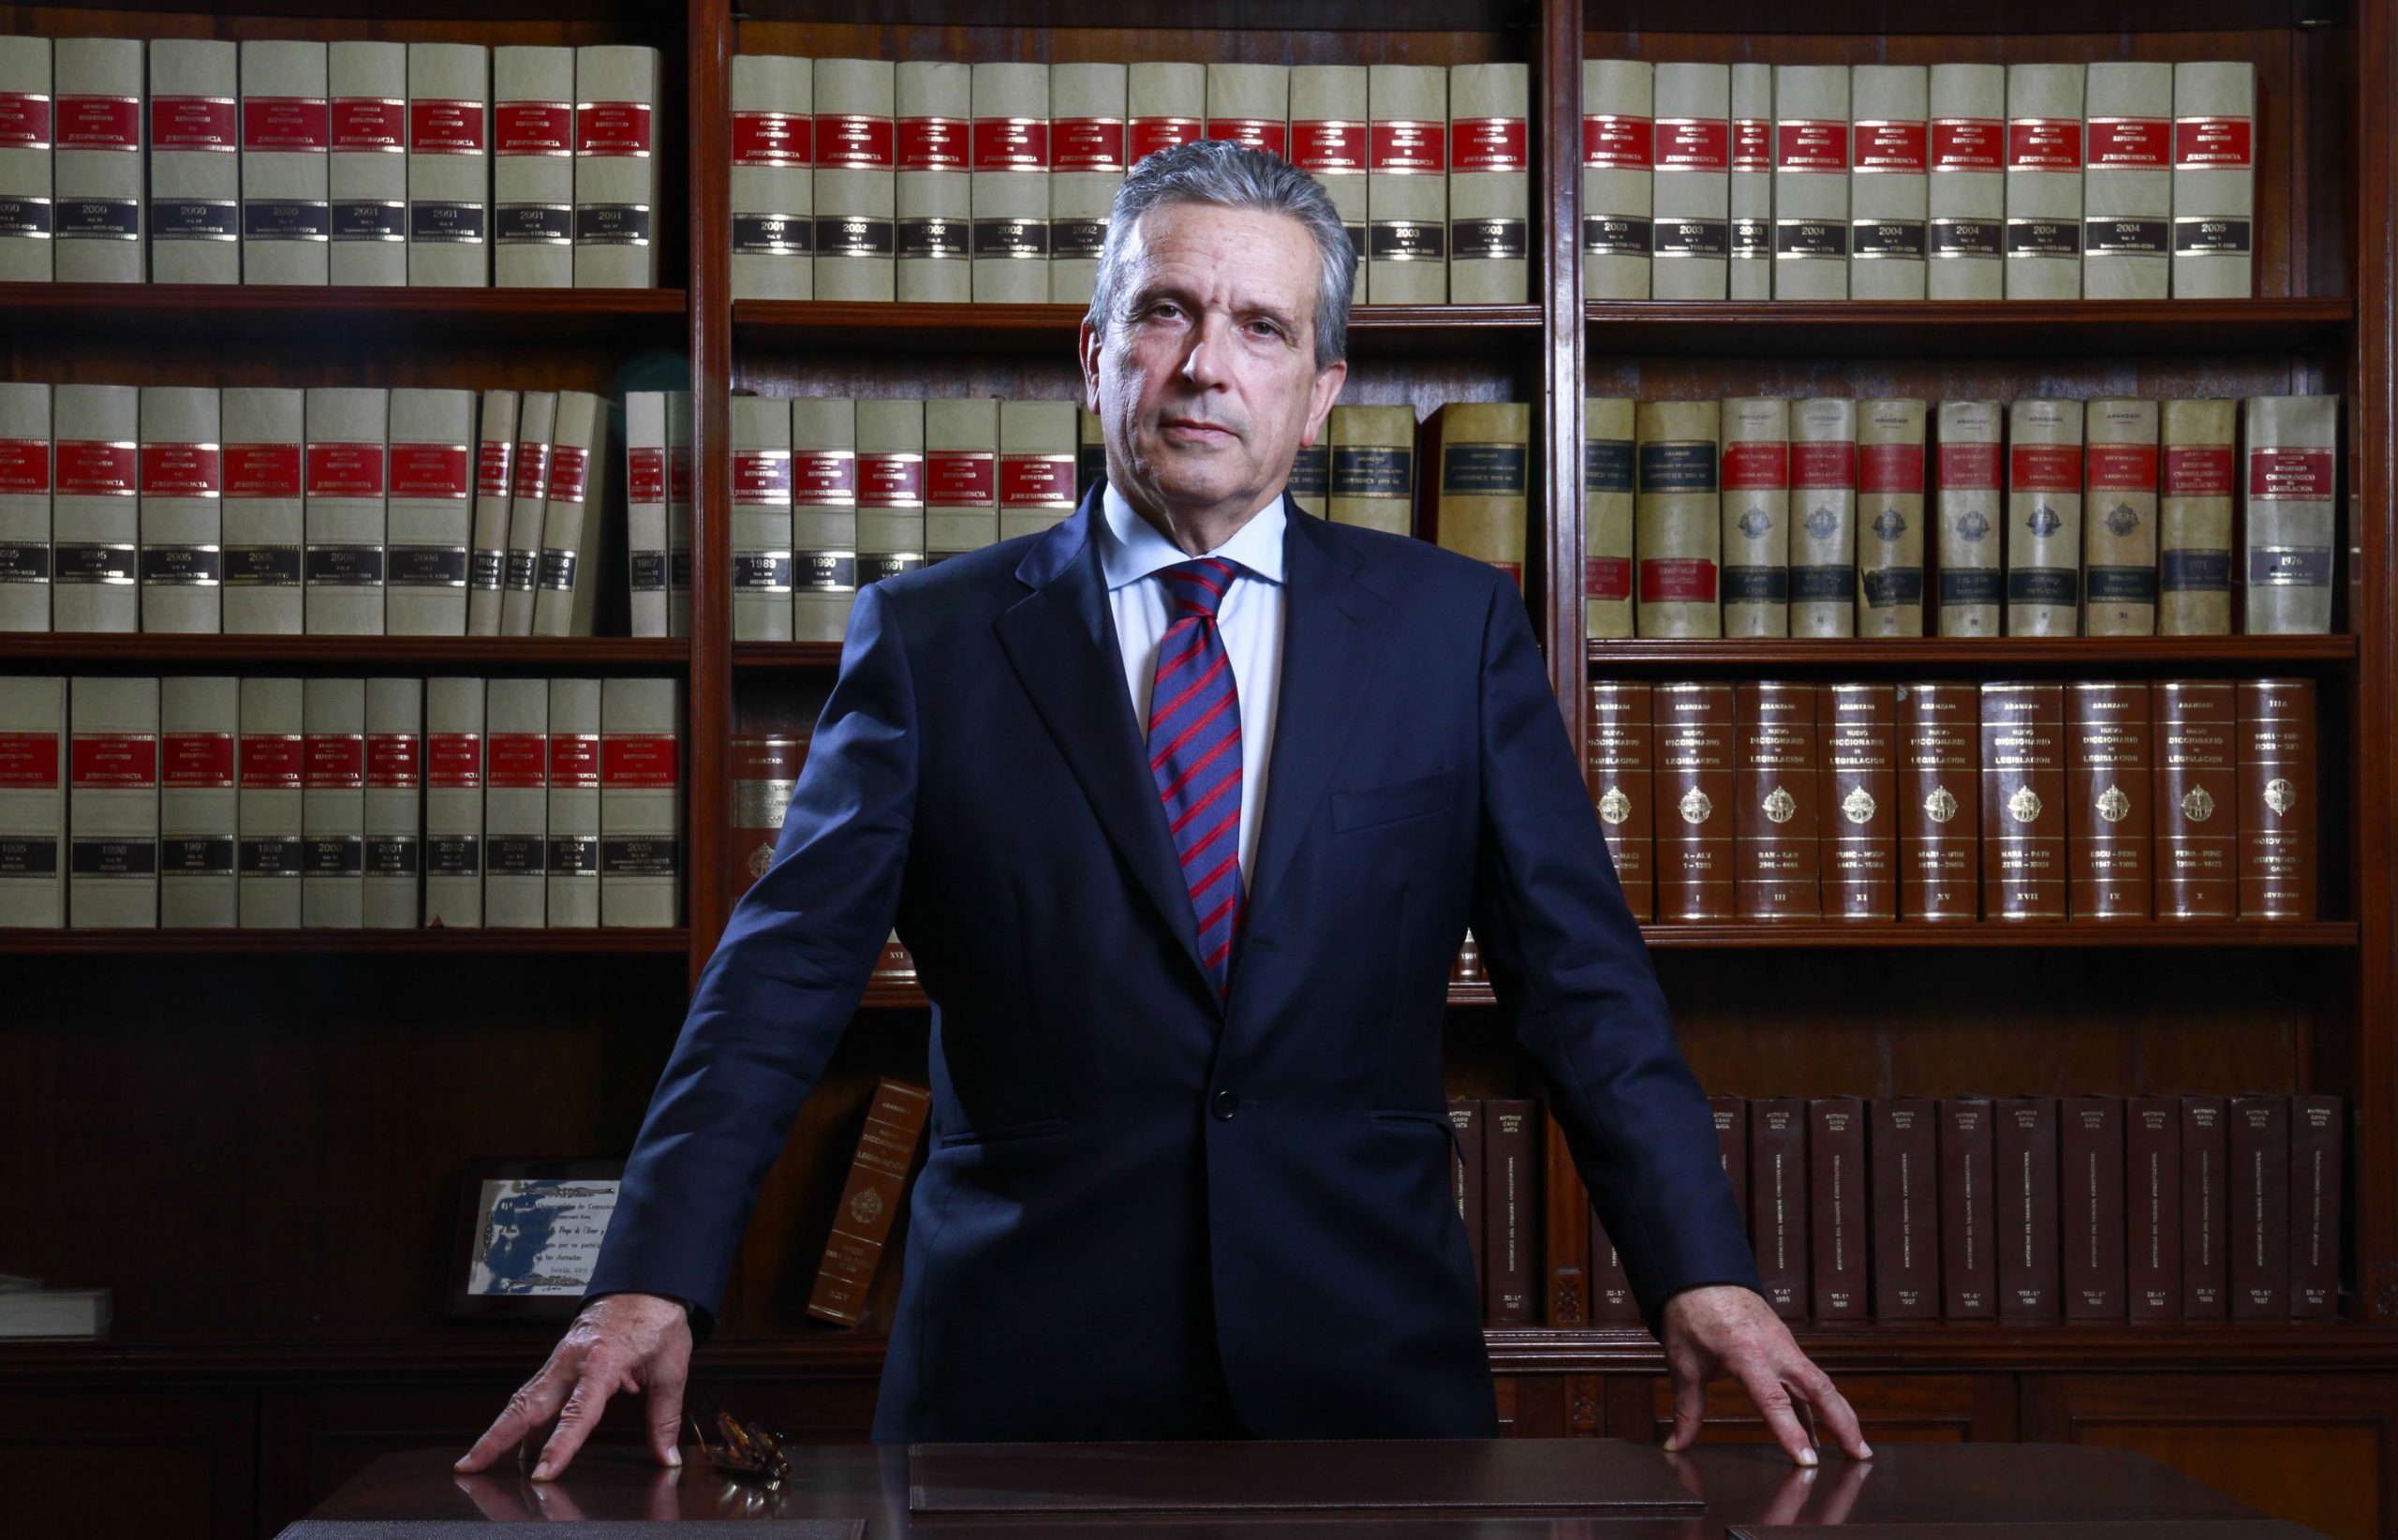 El exvocal del CGPJ y abogado, Adolfo Prego, plantea que los vocales judiciales sean elegidos por sorteo entre magistrados de más de 70 años